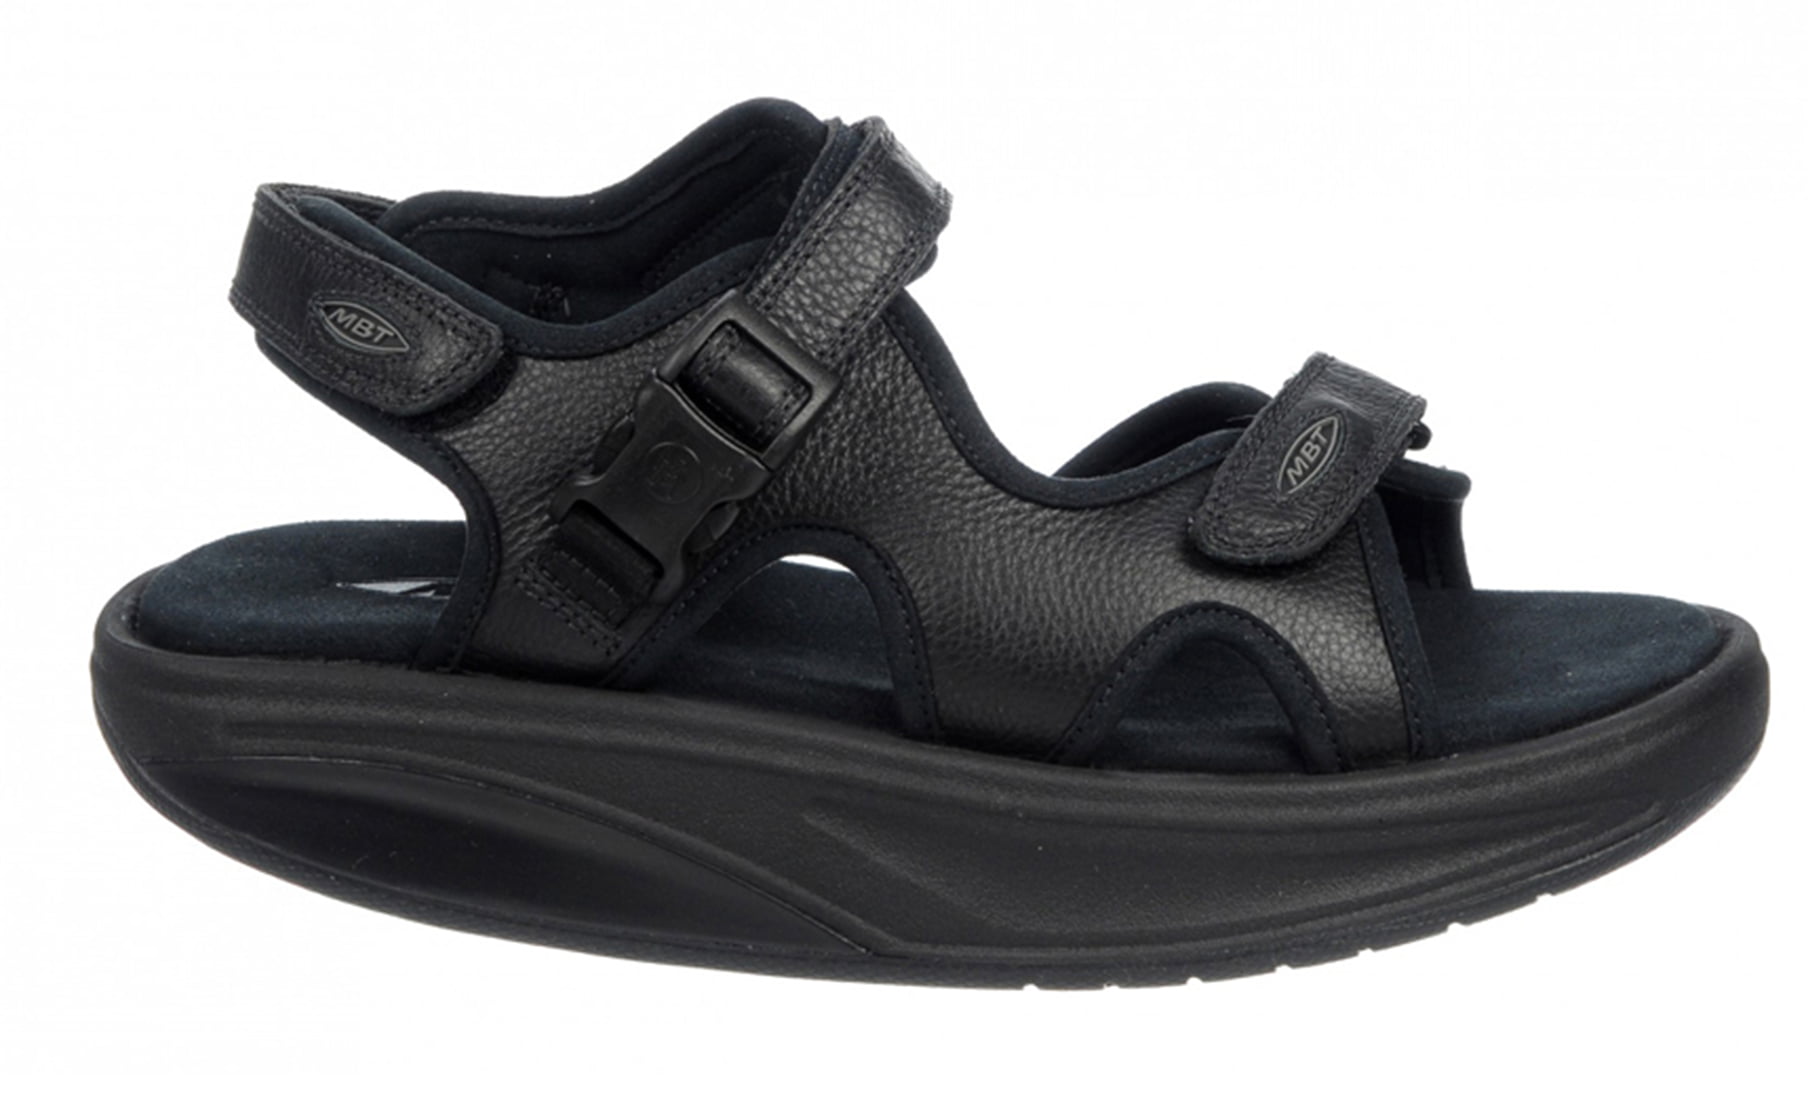 ensidigt Indvandring eftertiden MBT Shoes Women's Kisumu 3S Leather Sandal: 6 Medium (B) Sandal/Black  Velcro - Walmart.com